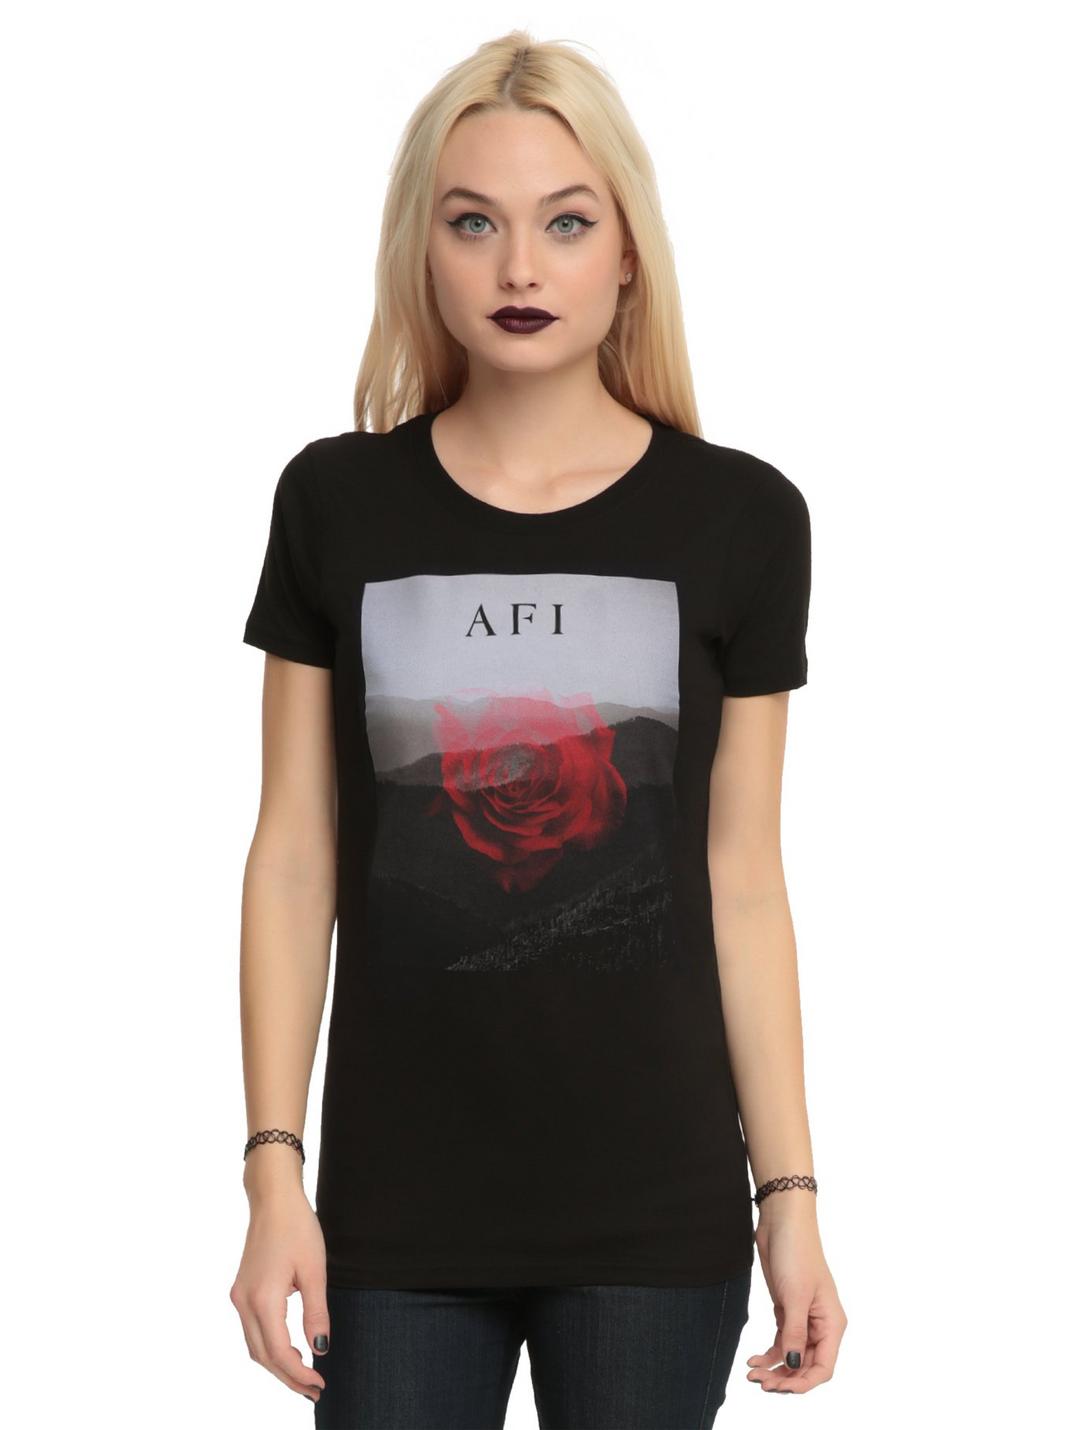 AFI Disappearing Rose Girls T-Shirt, BLACK, hi-res